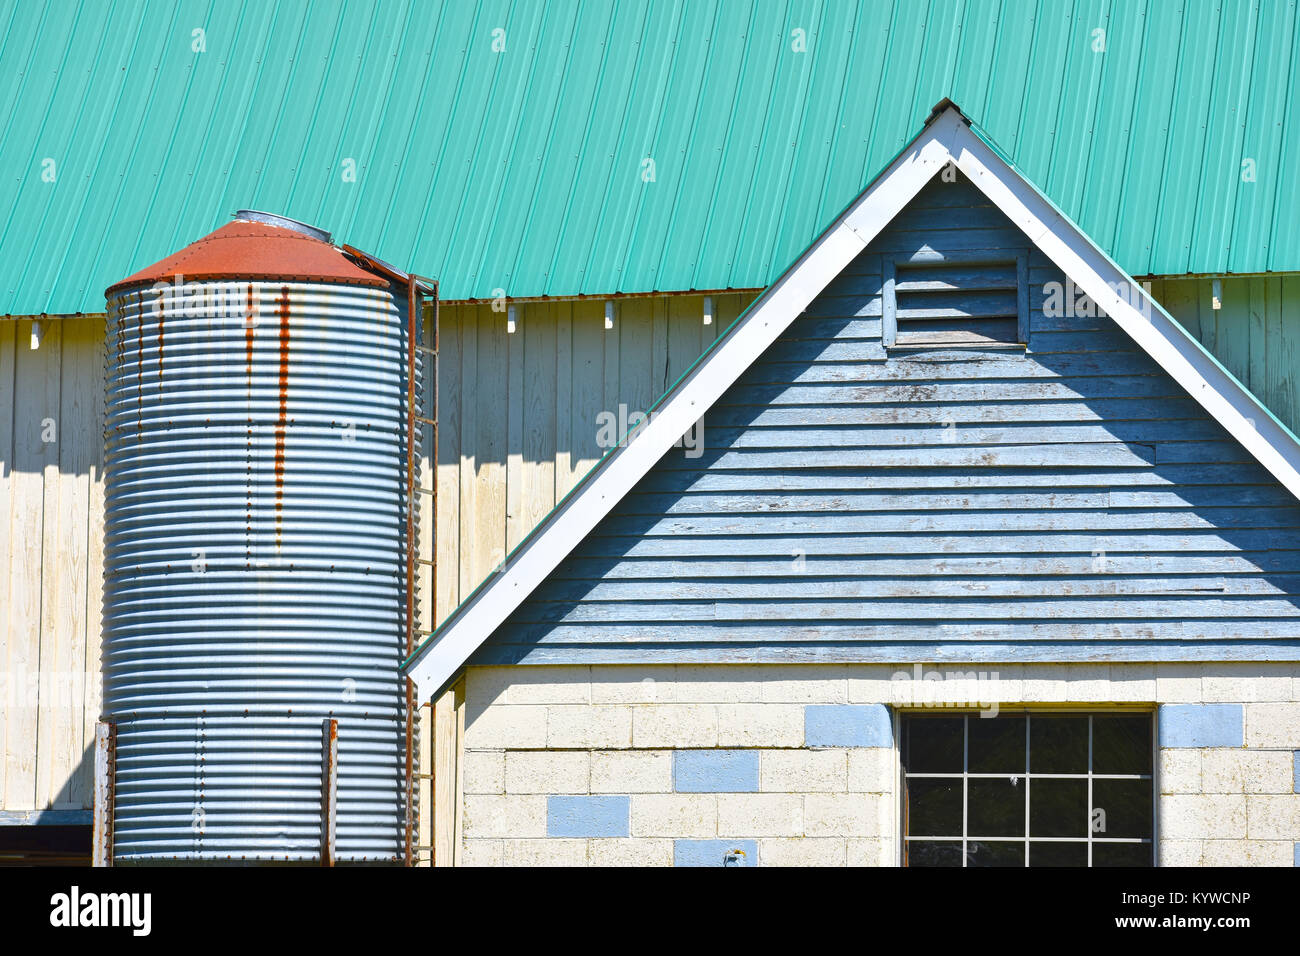 Farm Architektur hautnah mit einem kleinen Silo. Das Dach scheint neu zu sein, während das Gebäude in einem schlechten Zustand ist. Stockfoto